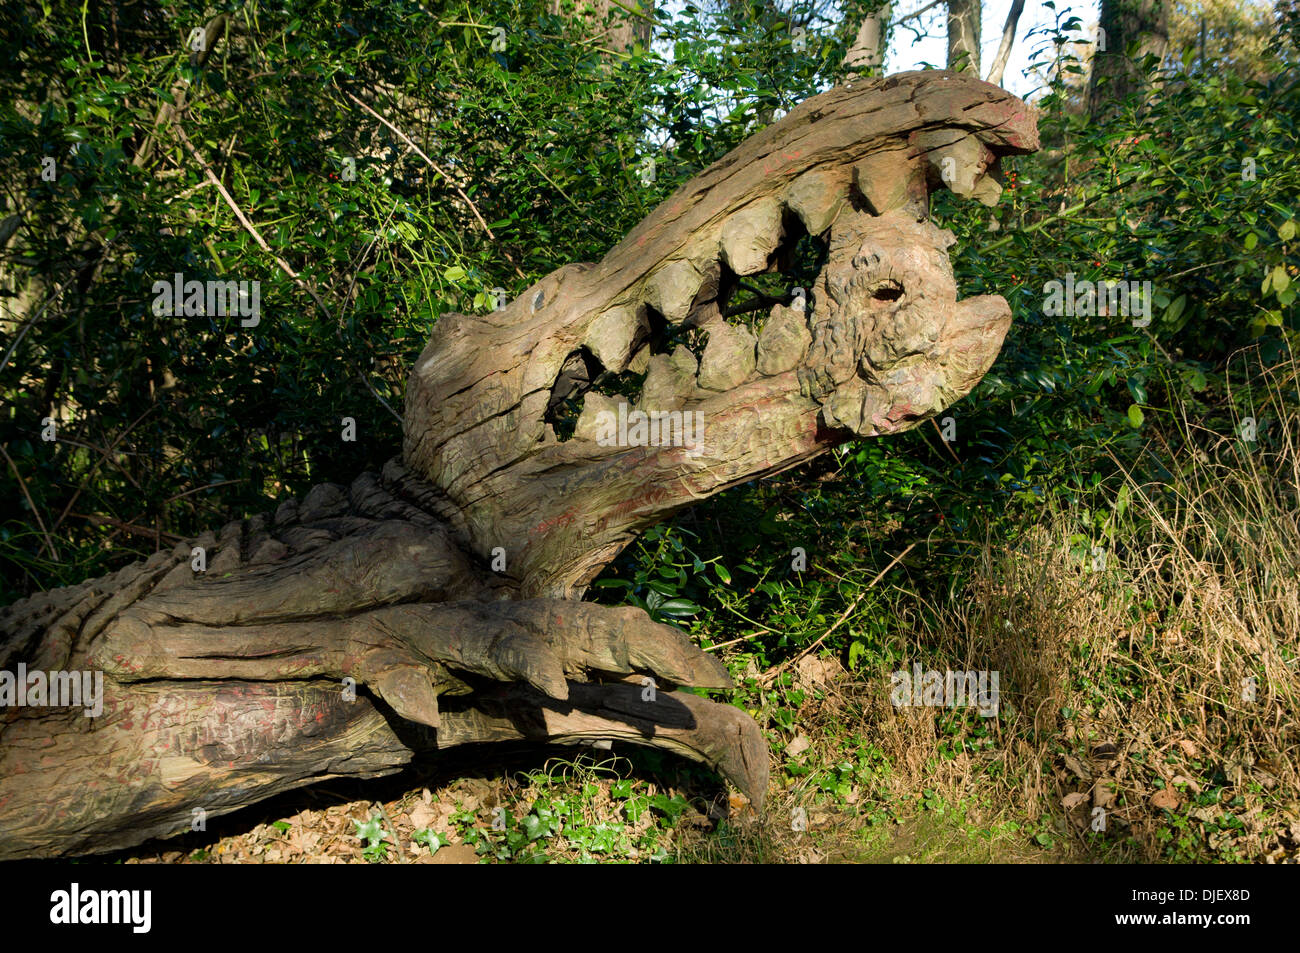 Sculpture en bois de crocodile, Margam Country Park Manor, Neath Port Talbot, Pays de Galles du Sud. Banque D'Images